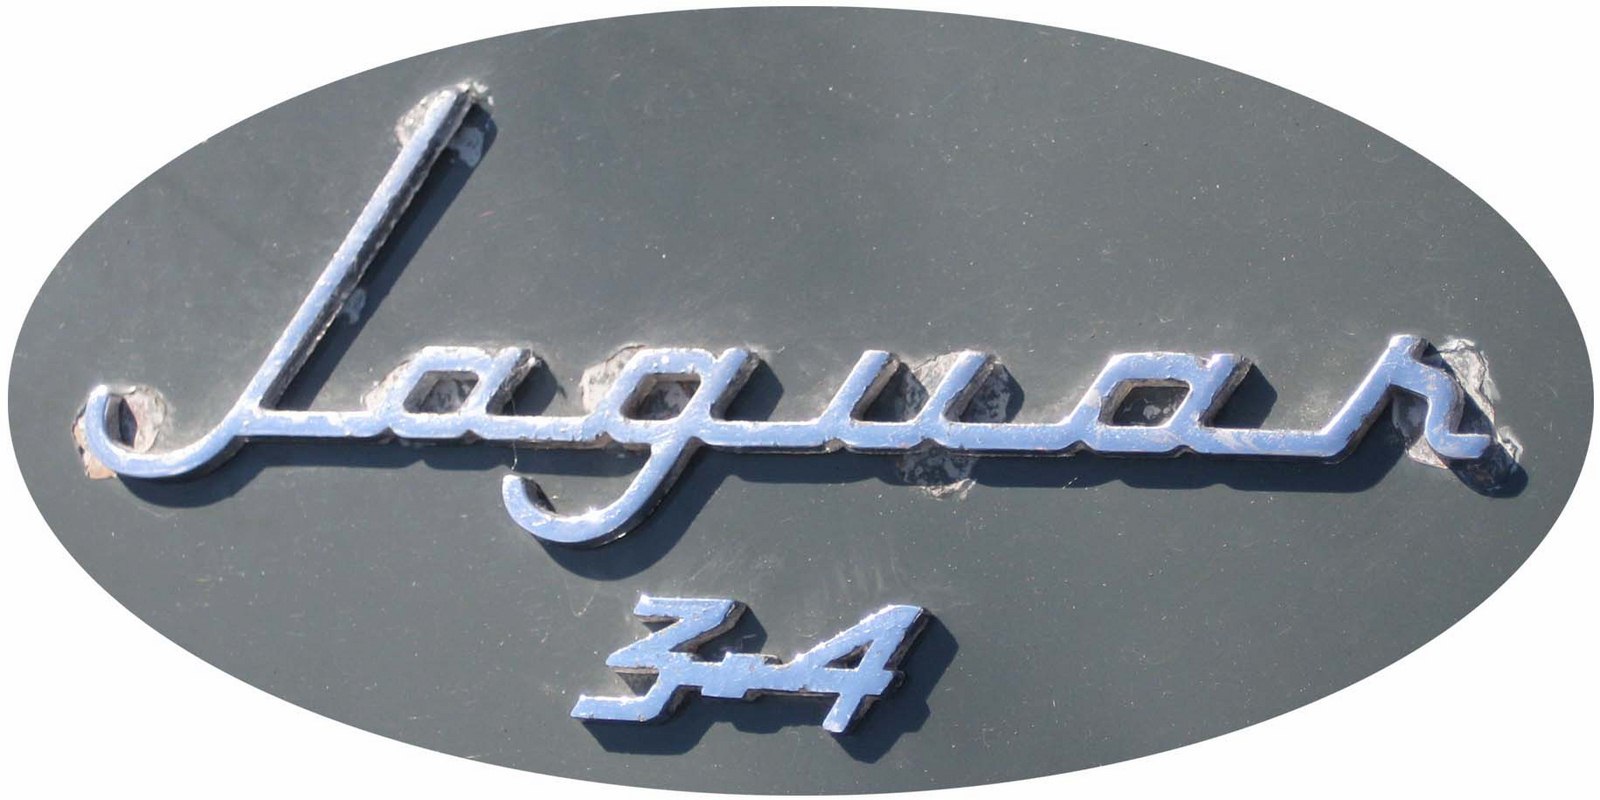 1959. Jaguar Mark II 3.4 Litre (1959-1967 trunk emblem)